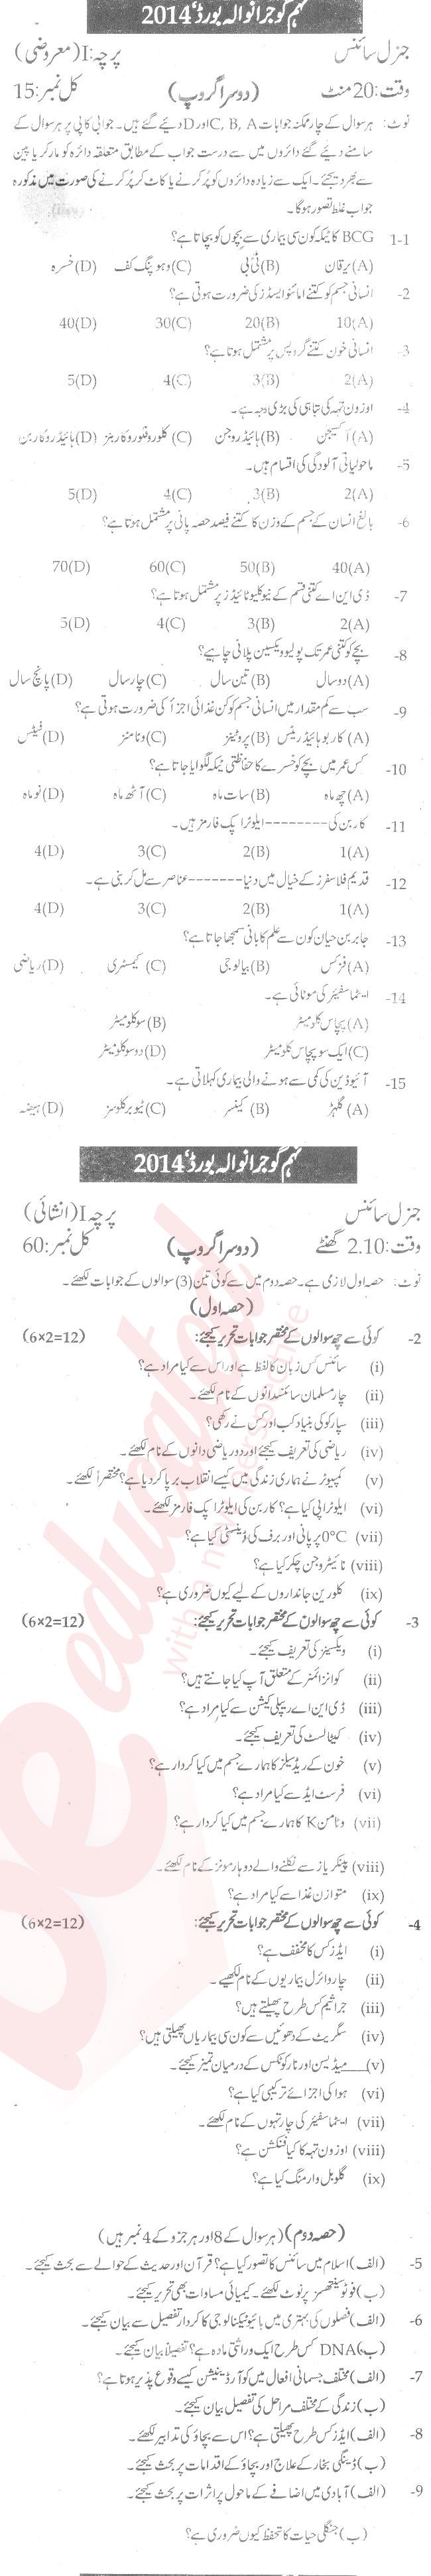 General Science 9th Urdu Medium Past Paper Group 2 BISE Gujranwala 2014